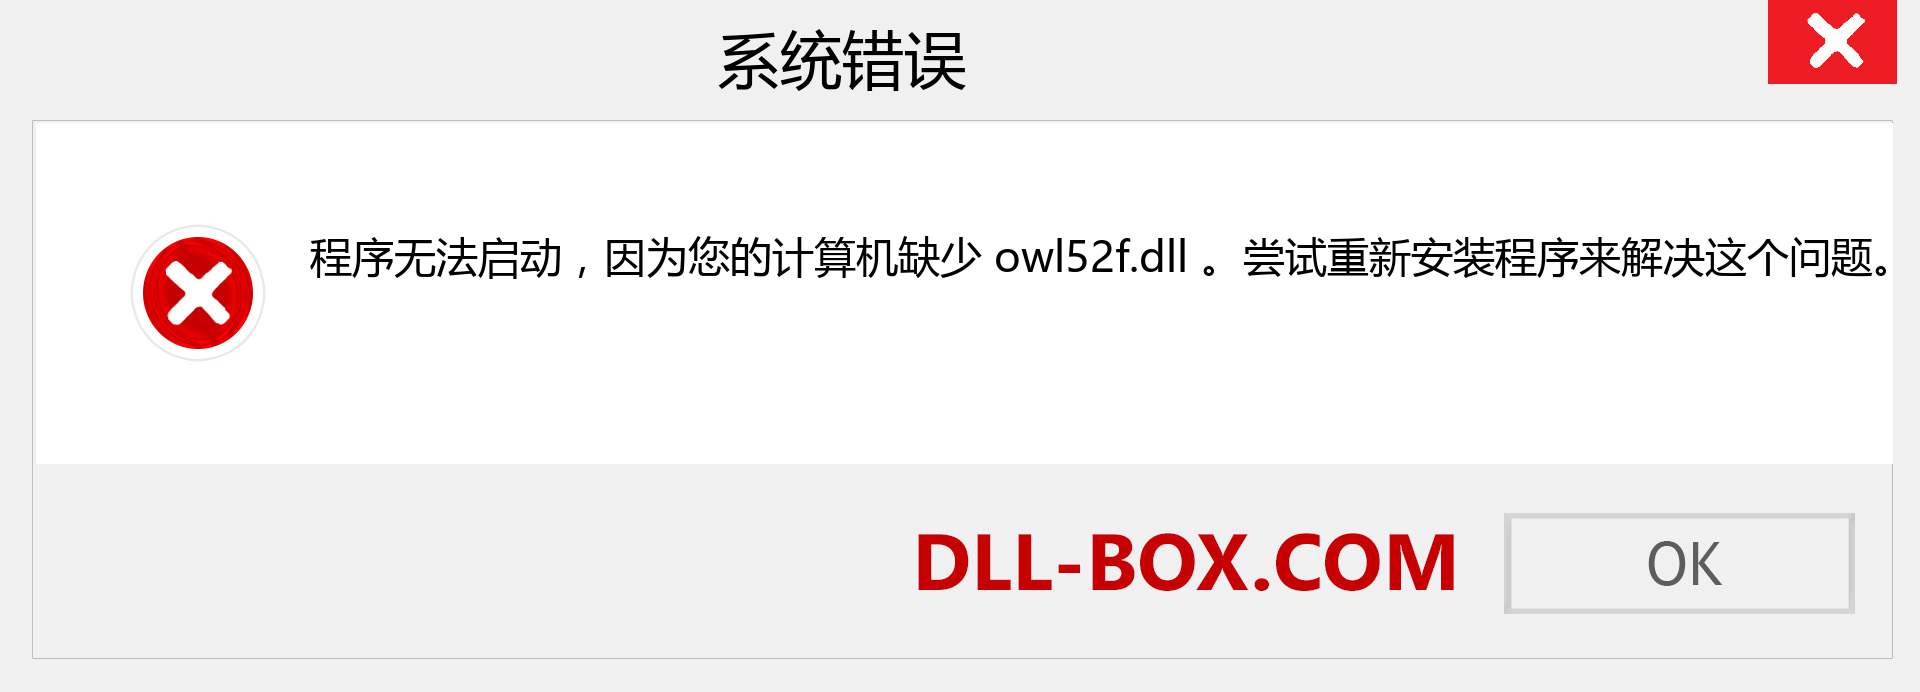 owl52f.dll 文件丢失？。 适用于 Windows 7、8、10 的下载 - 修复 Windows、照片、图像上的 owl52f dll 丢失错误